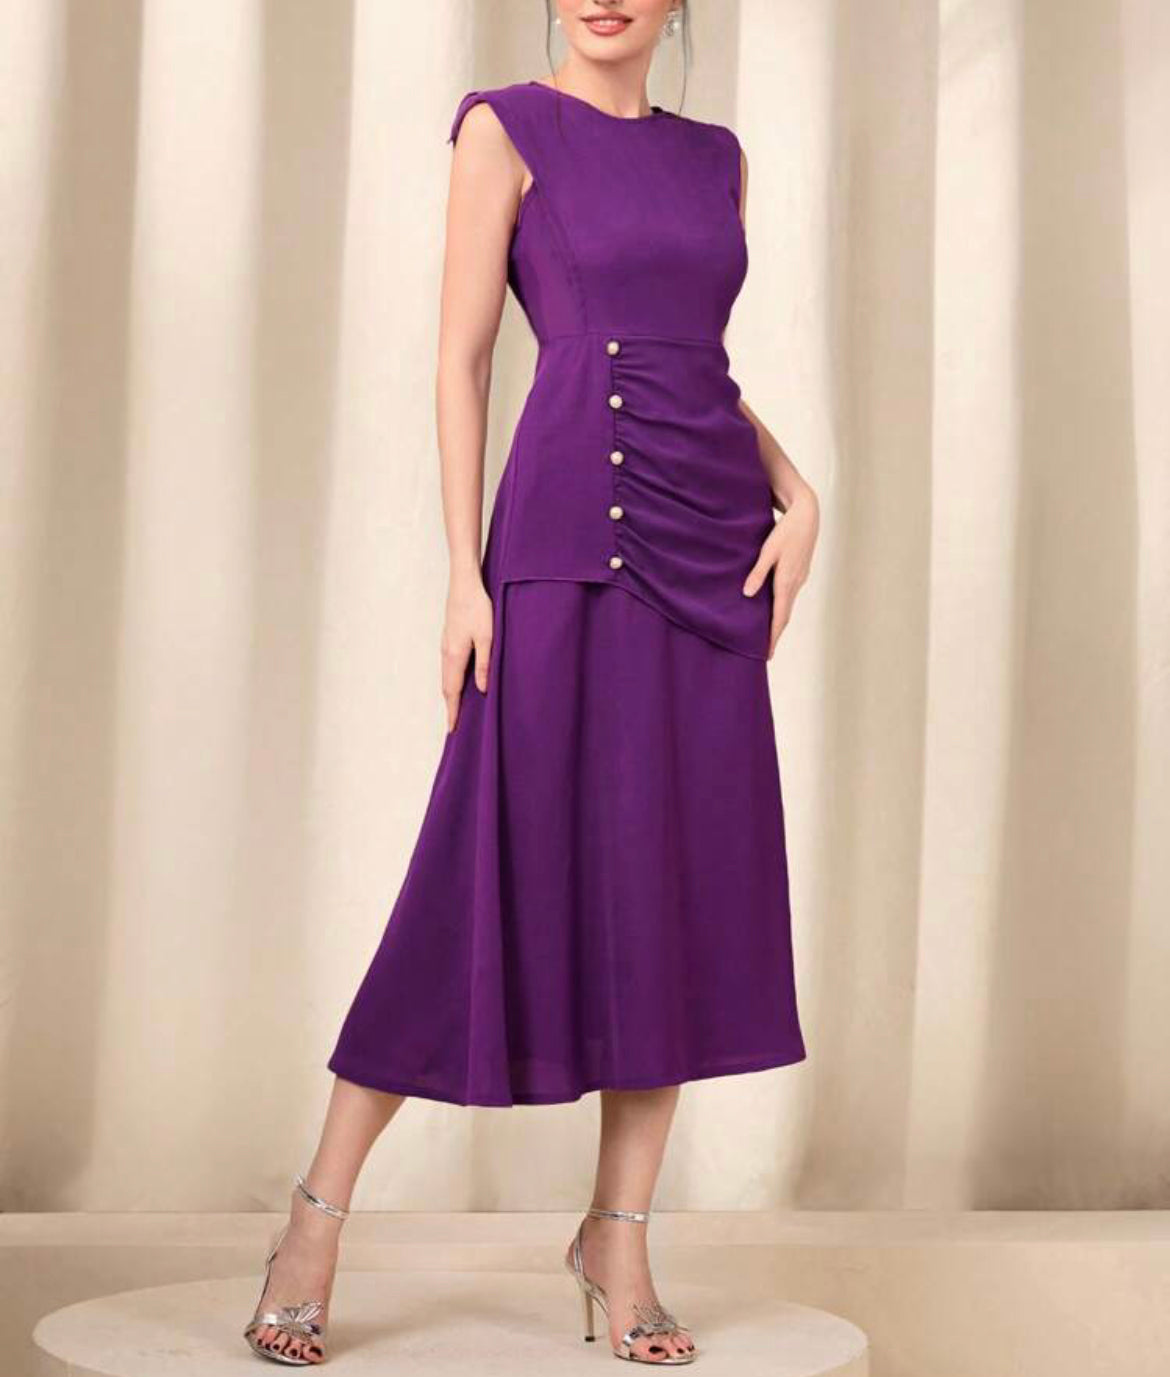 Vestido ocasional violeta/roxo